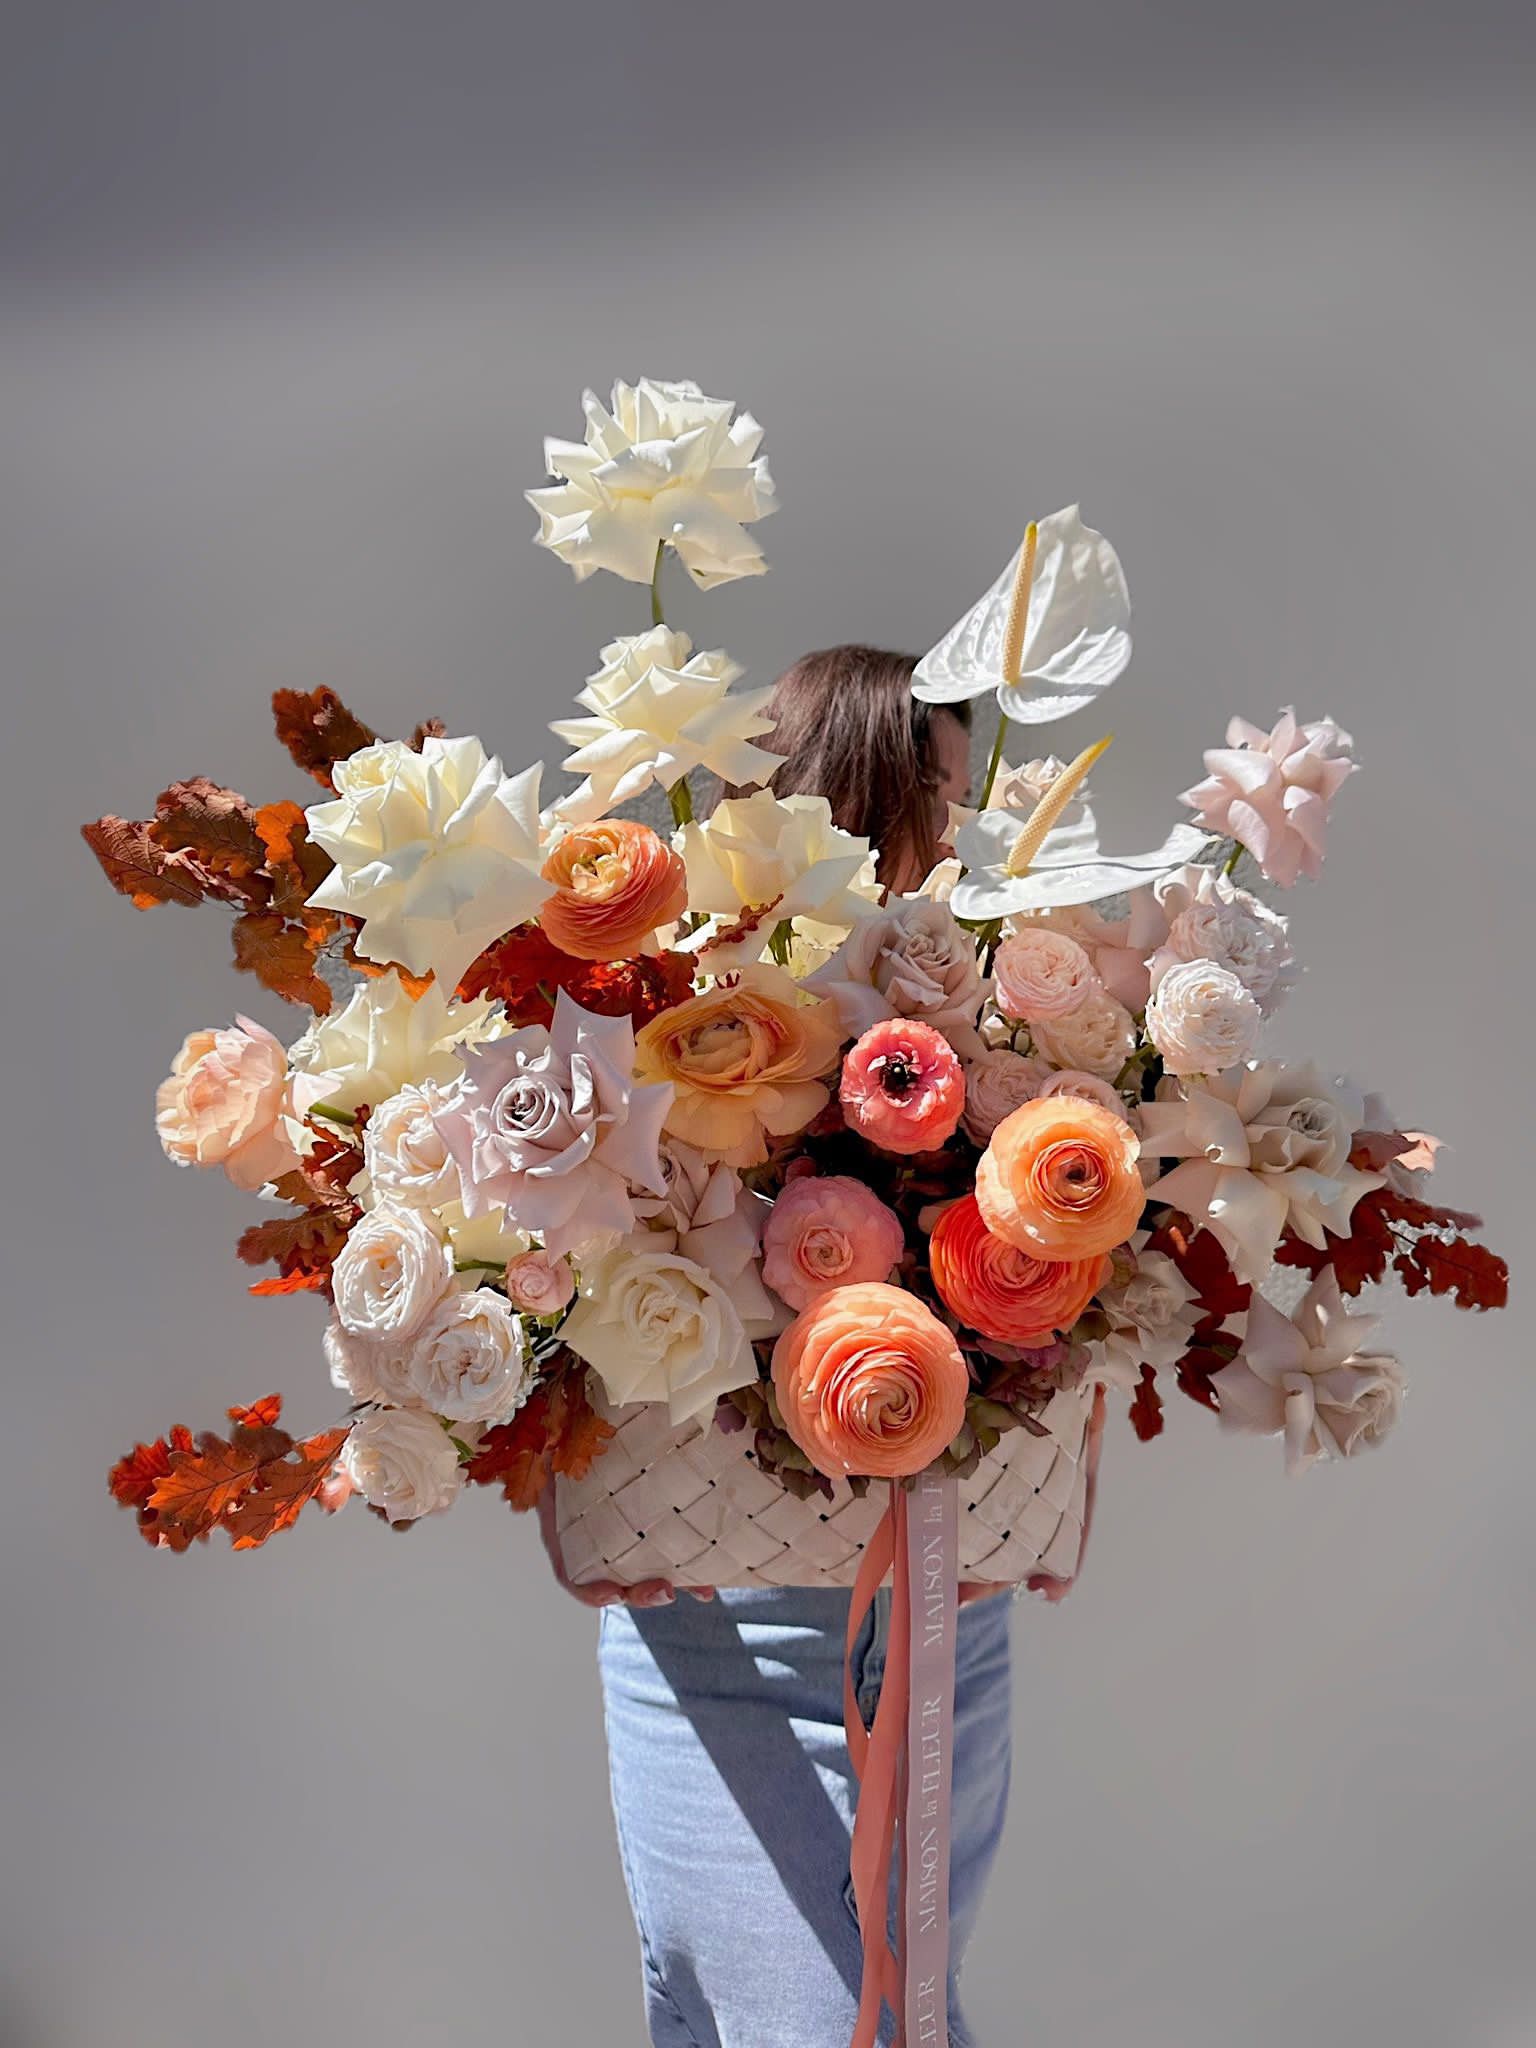 Romantique - Flower arrangement in a Bottega style basket